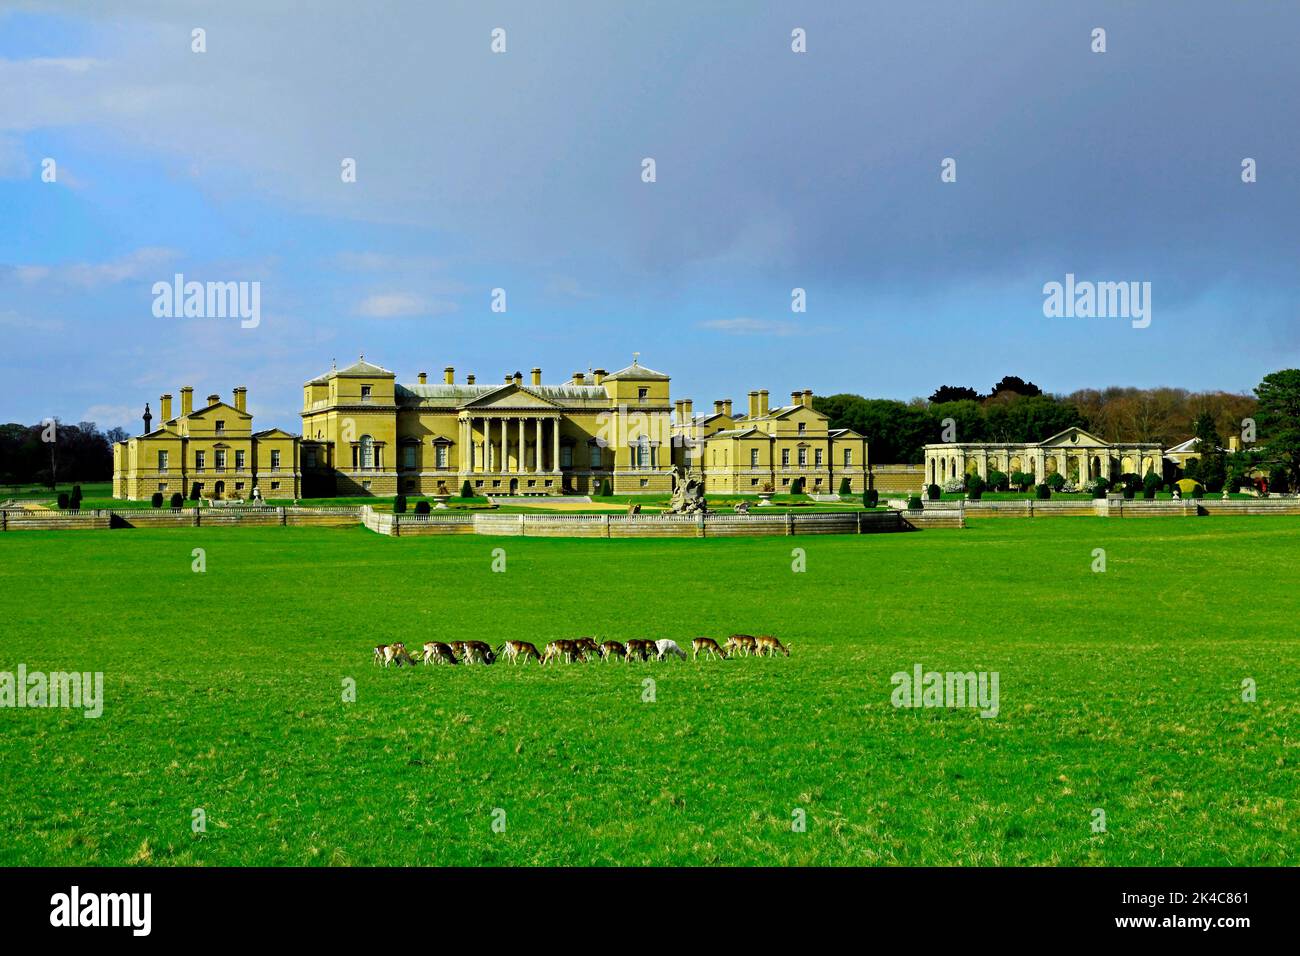 Holkham Hall, Palladian mansion, stately home, parkland, herd of deer, Norfolk, England, UK Stock Photo